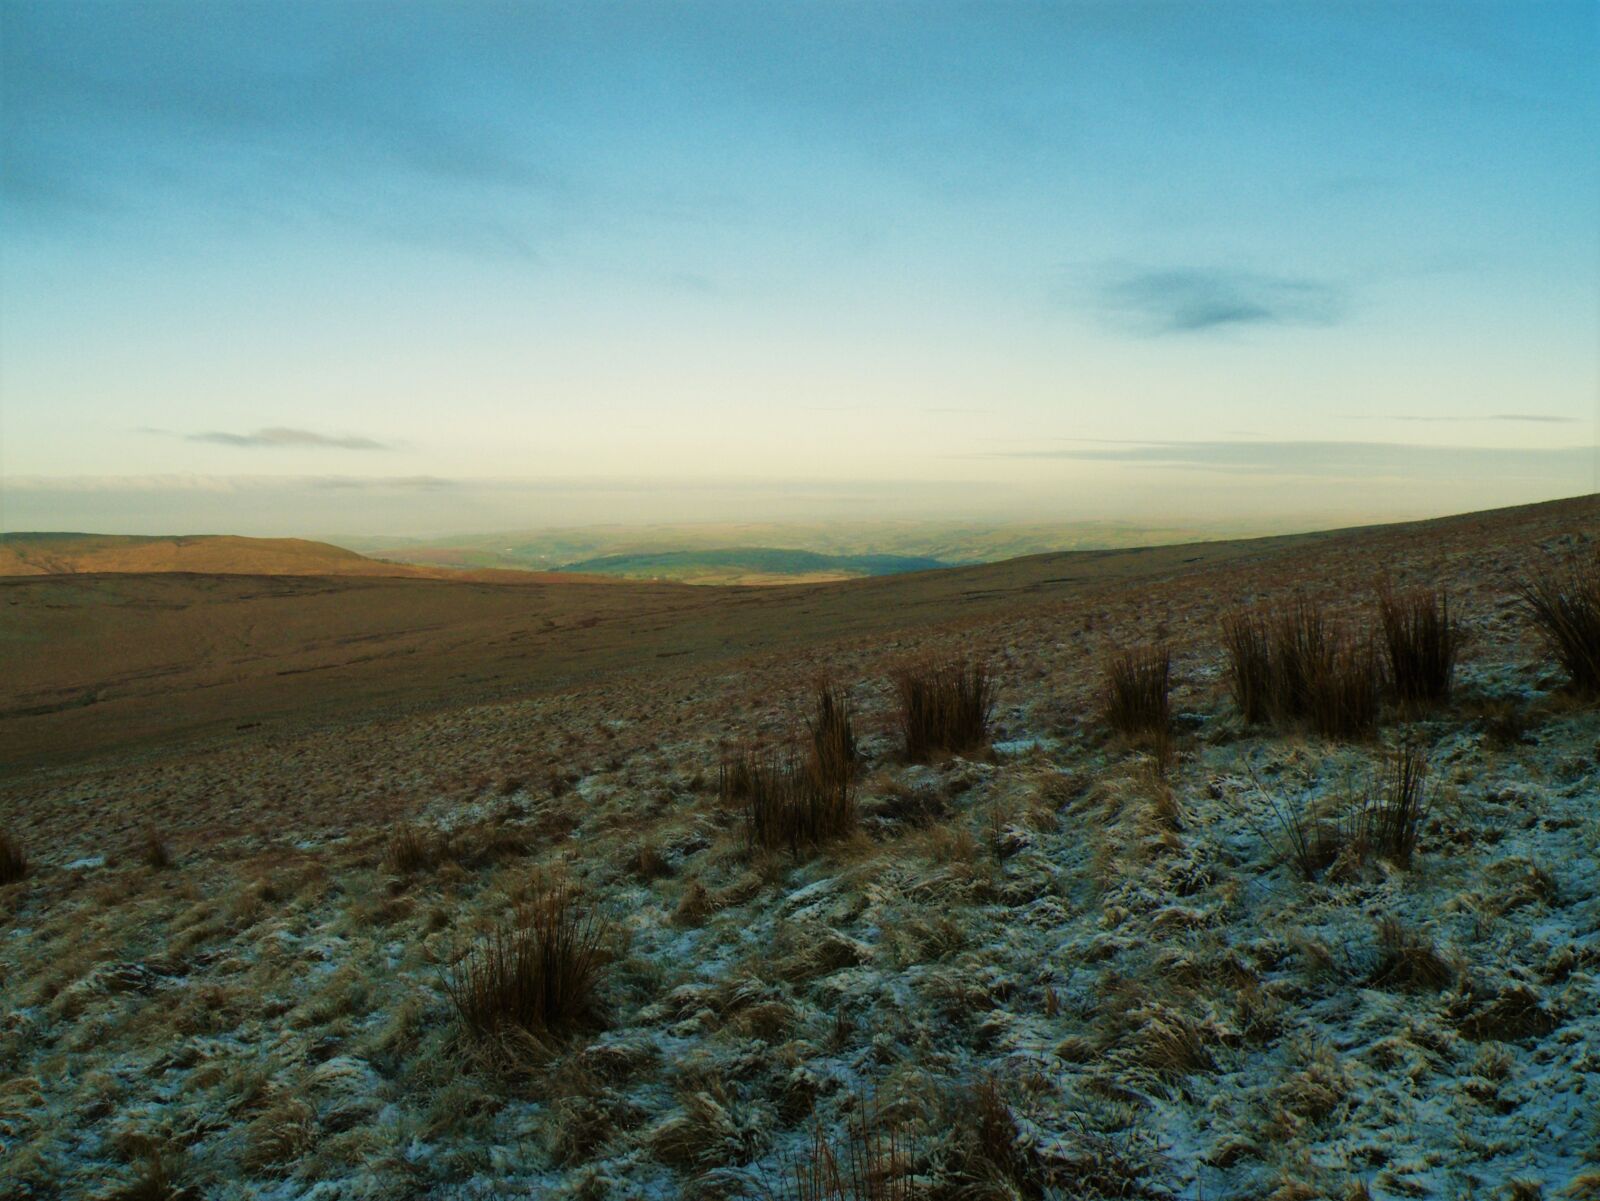 Fujifilm FinePix S8100fd sample photo. Wales, pen-y-fan, sunrise photography